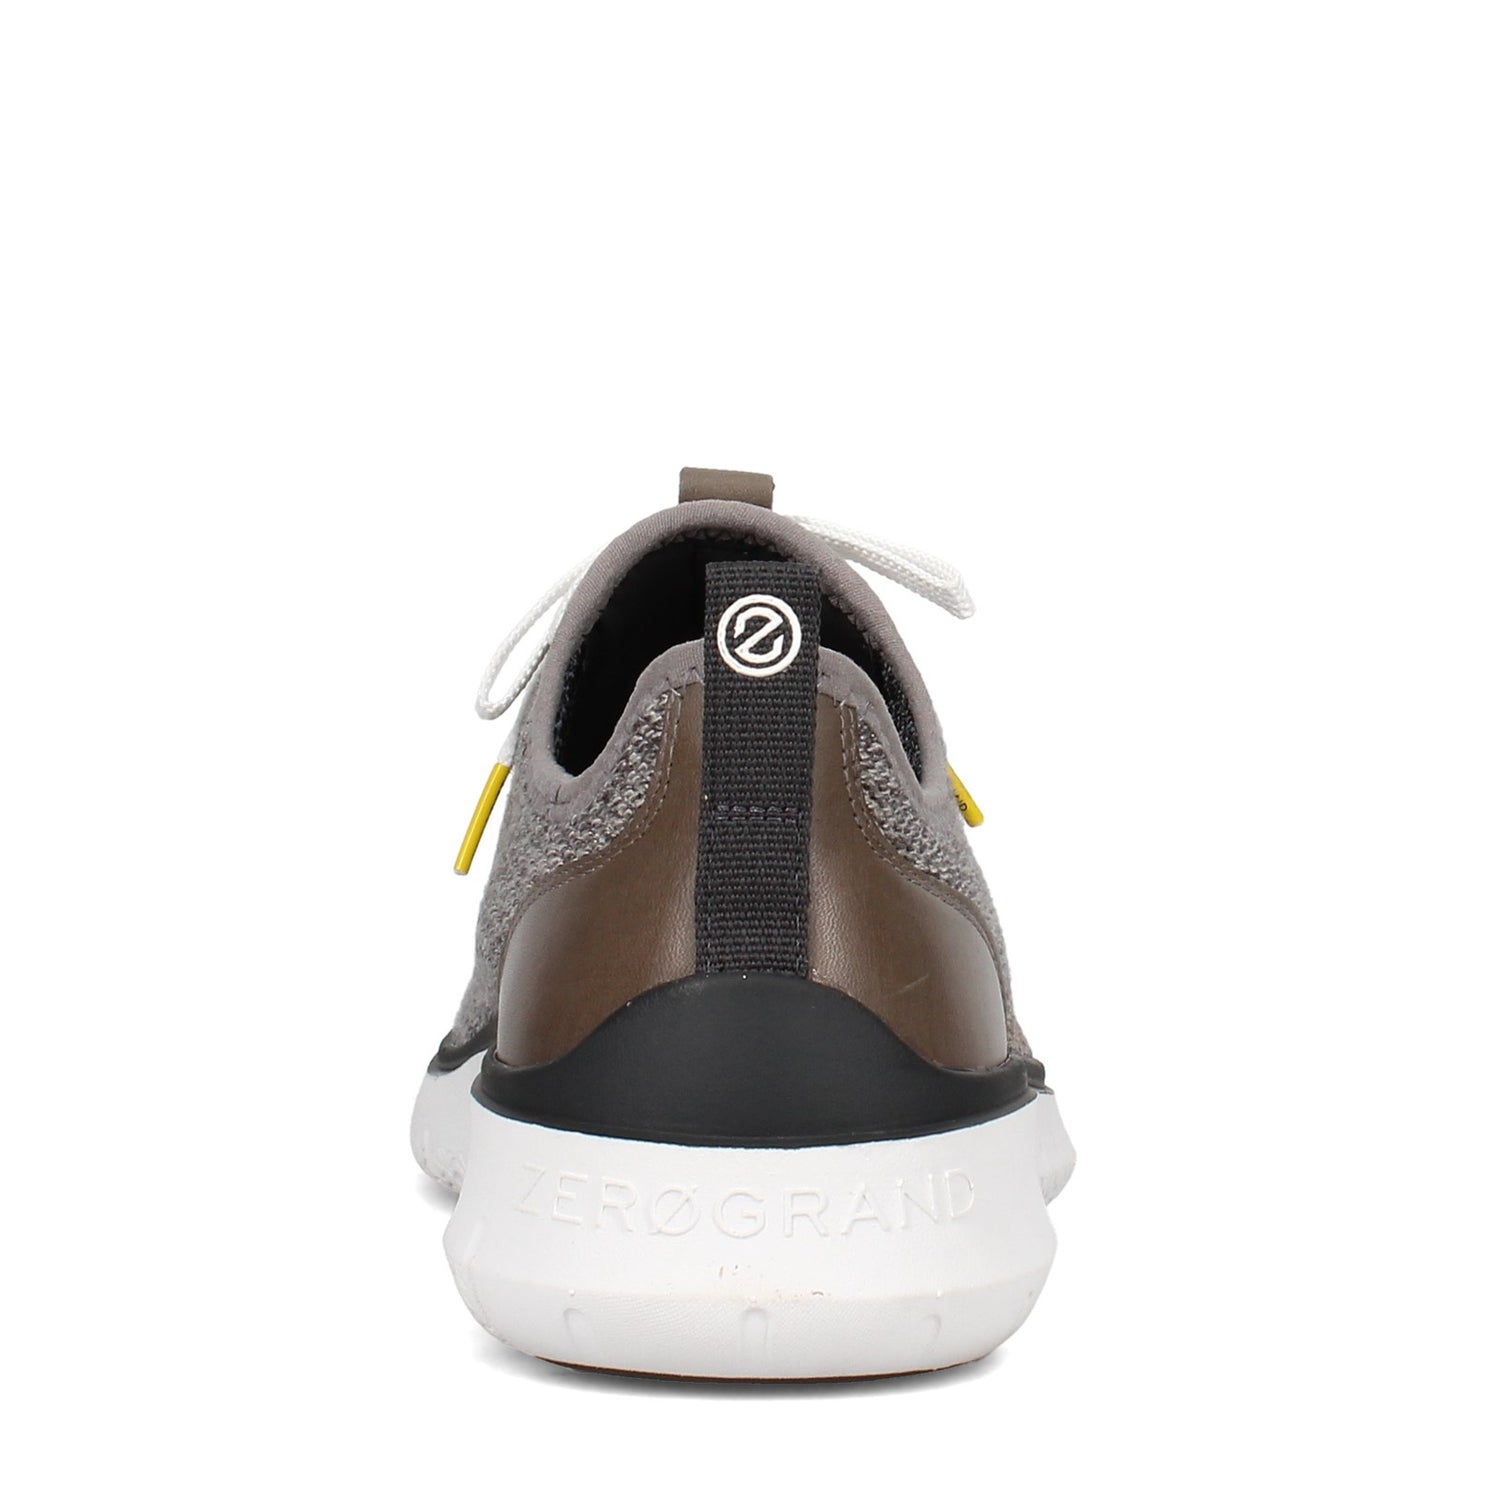 Peltz Shoes  Men's Cole Haan Generation ZEROGRAND Oxford GLACIER C31405